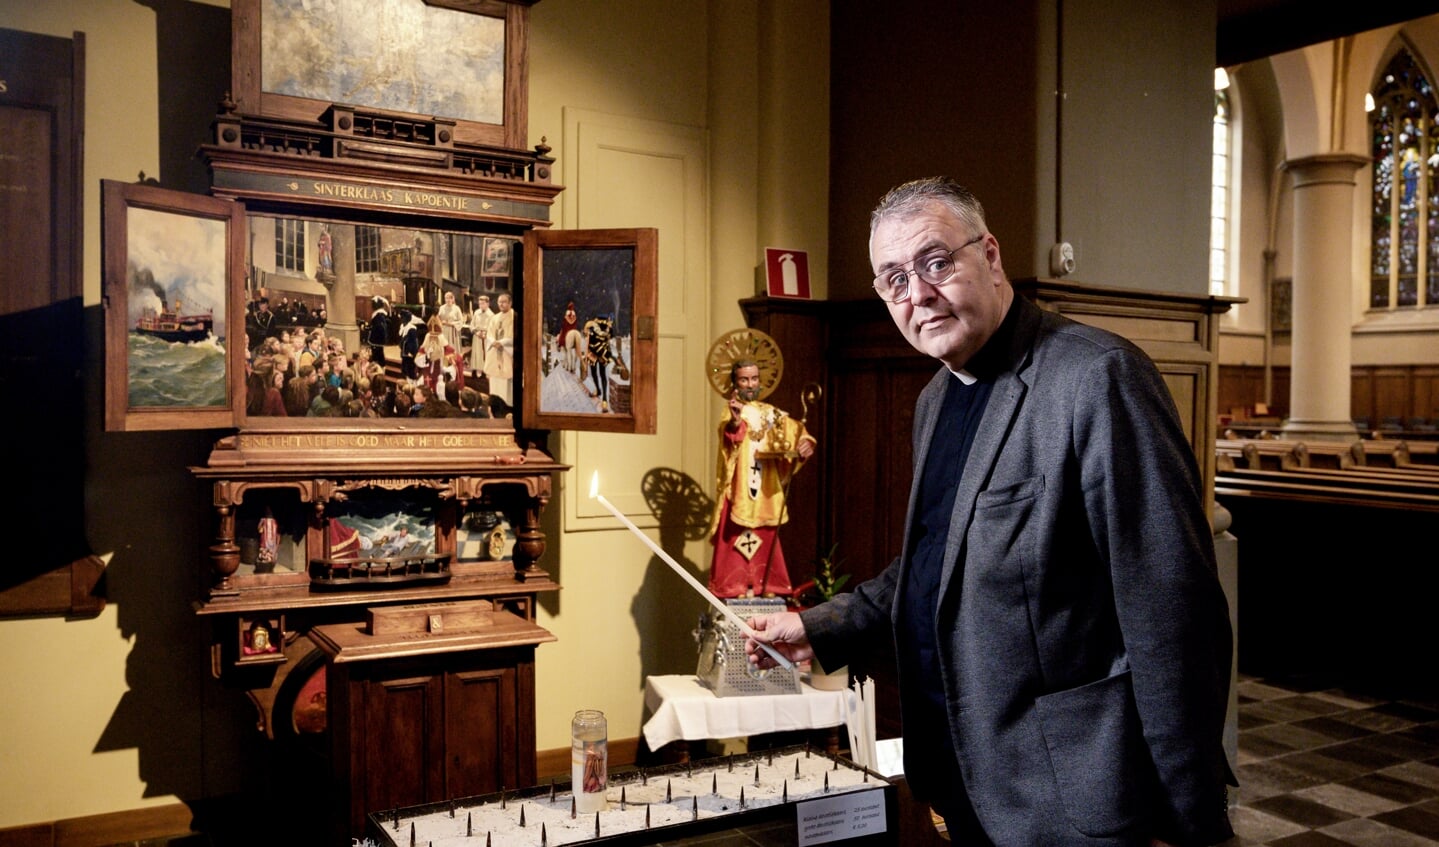 Pastoor Marcus Vankan heeft veel kennis over de Heilige Sint Nikolaas. In zijn kerk is een altaarschildering met moderne sinterklaastaferelen.